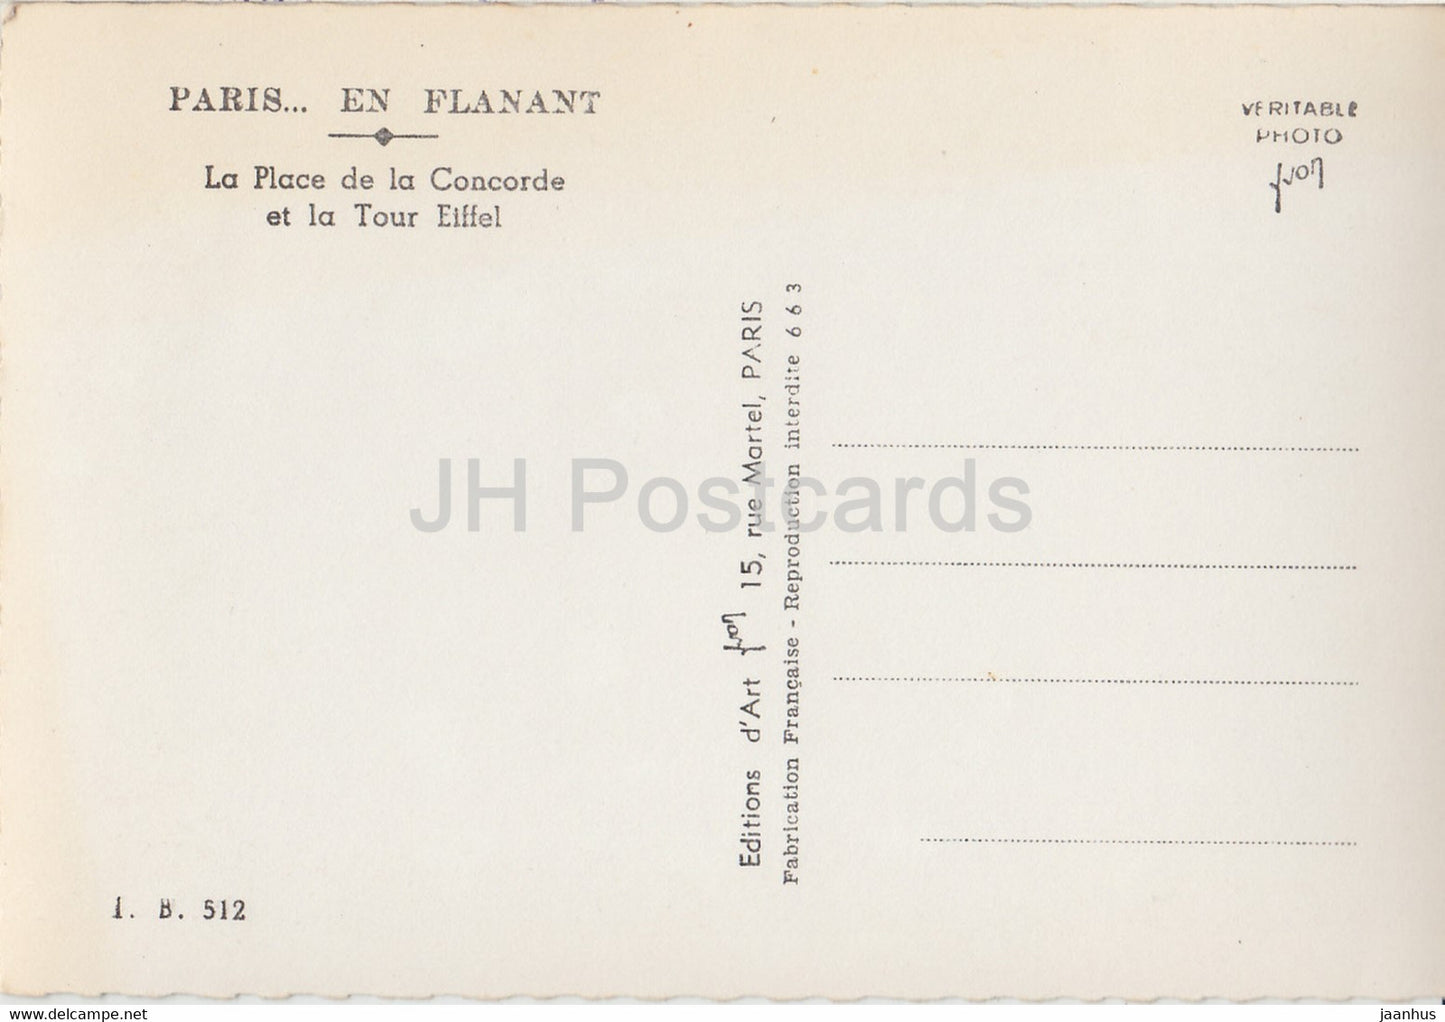 Paris en Flanant - La Place de la Concorde et la Tour Eiffel - voitures - carte postale ancienne - France - inutilisée